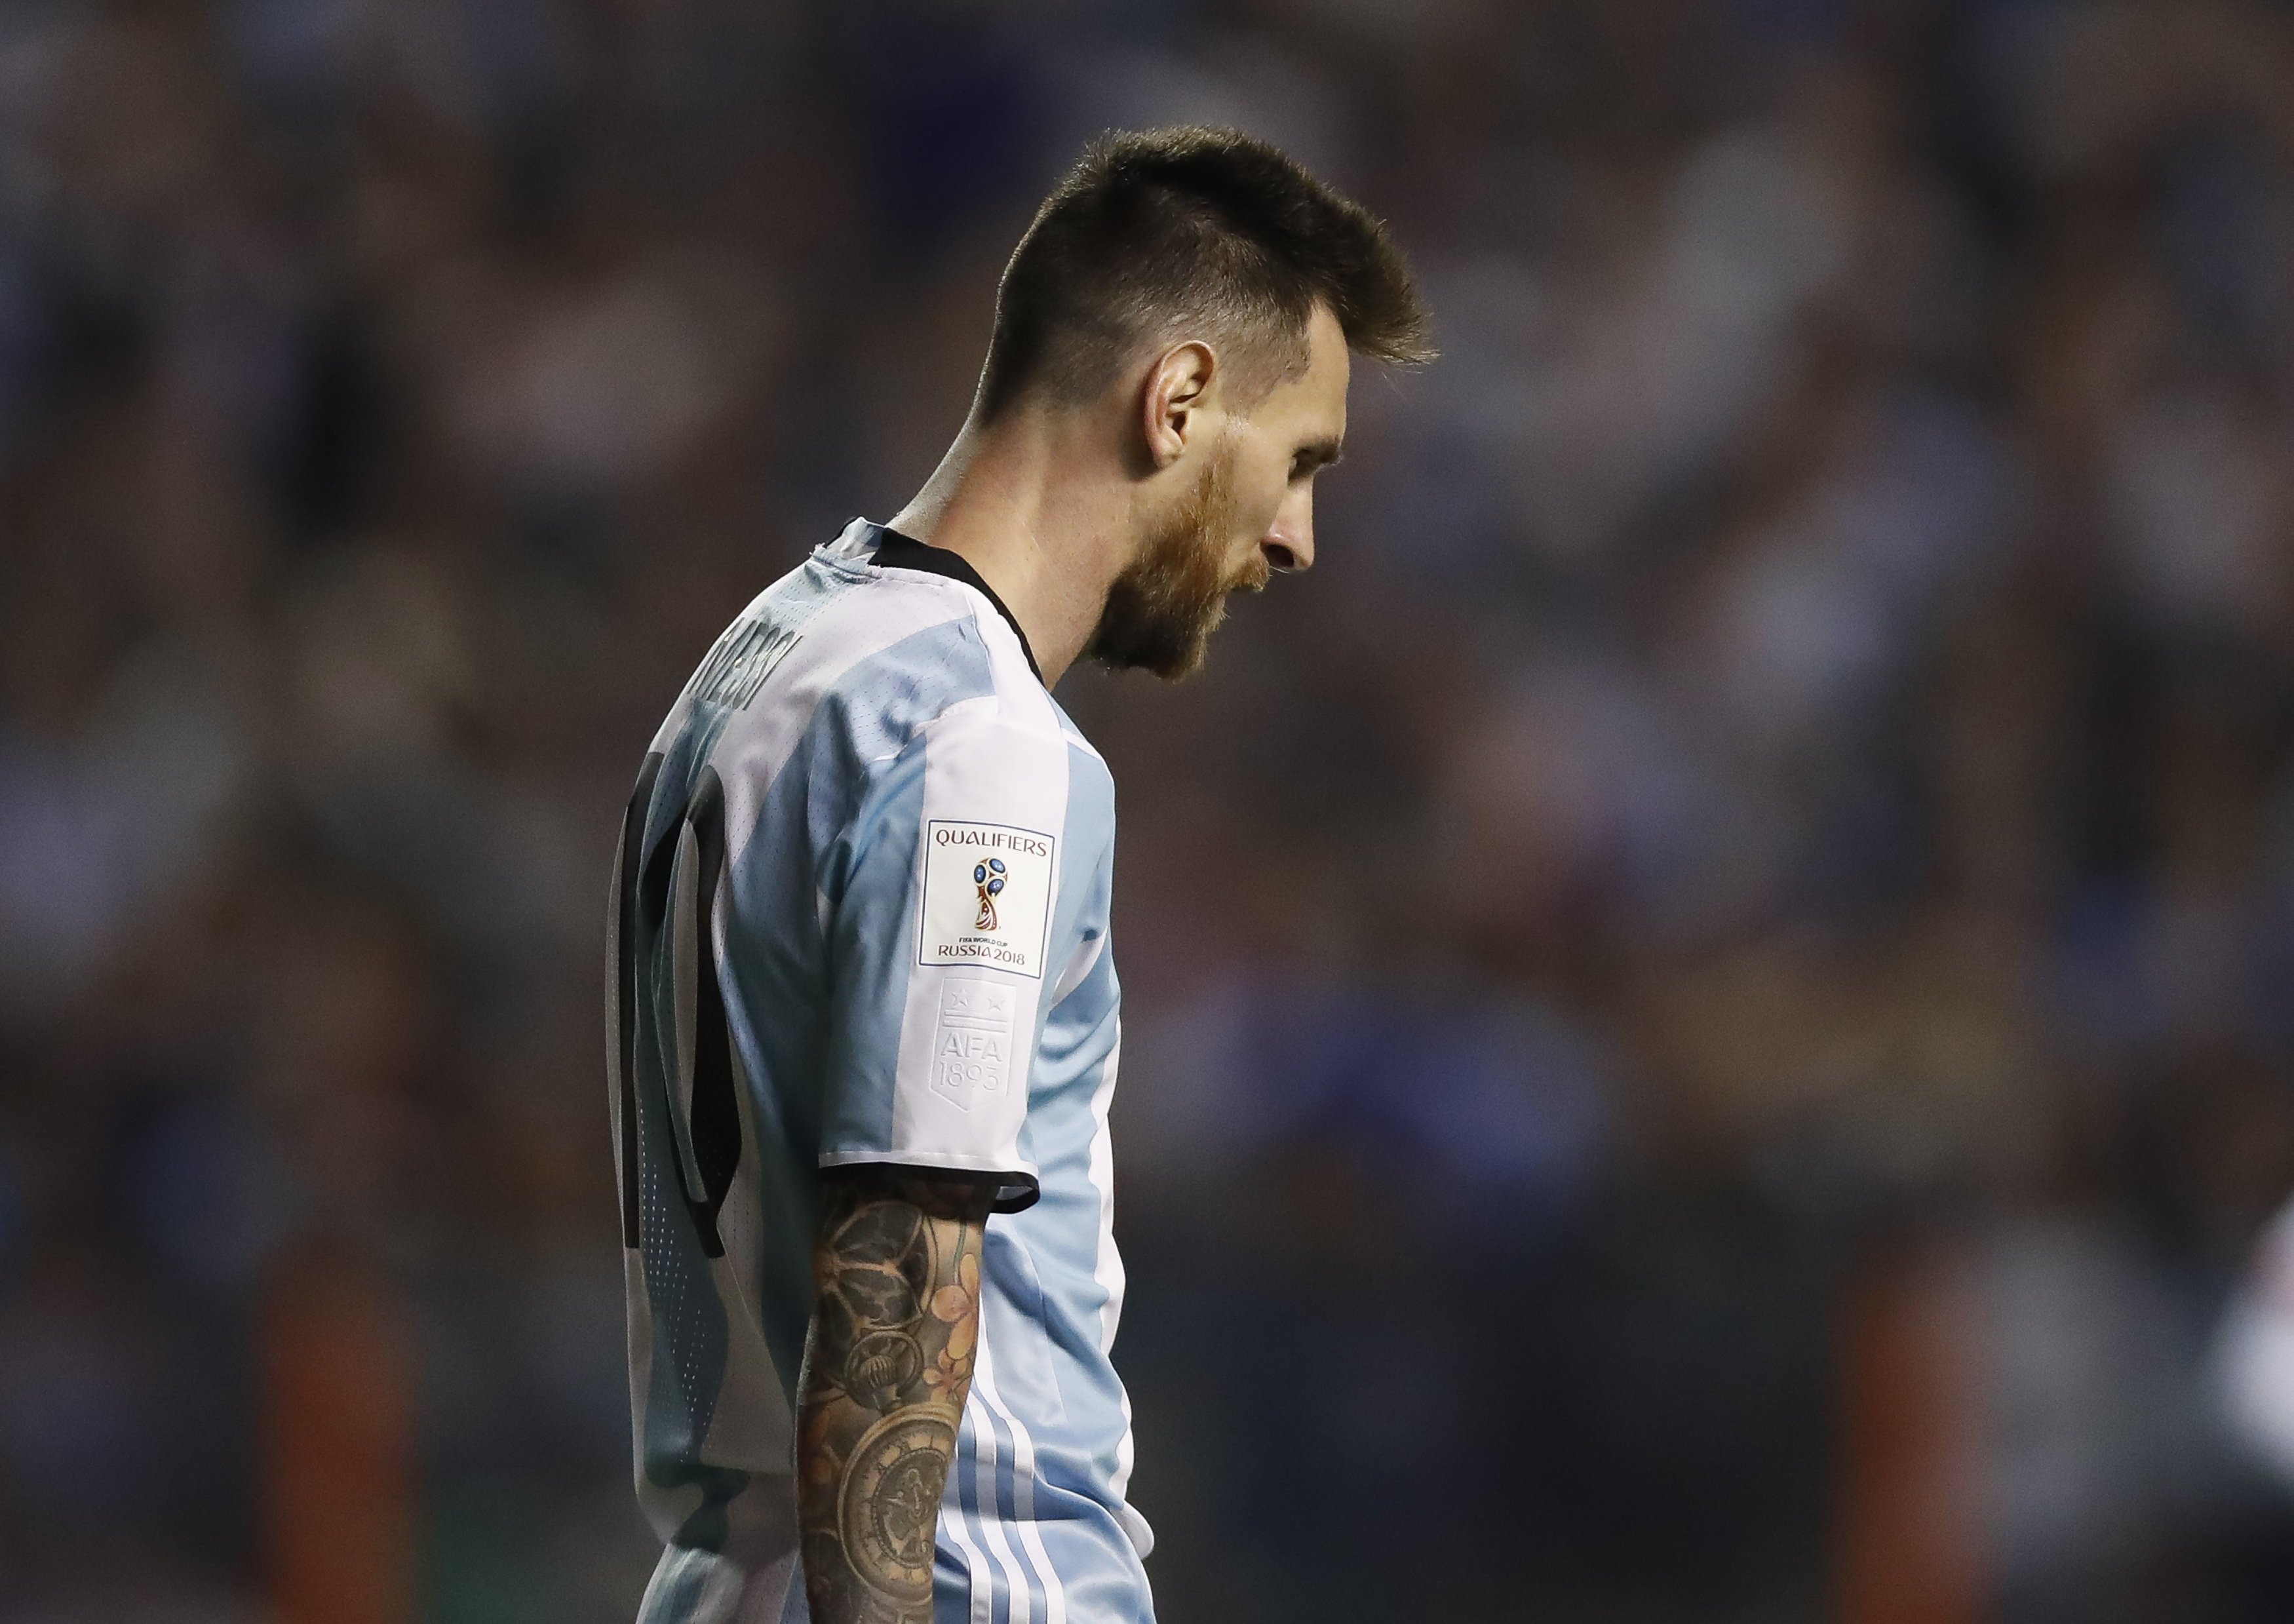 El sorteo del Mundial sonríe a España y le da la espalda a Messi